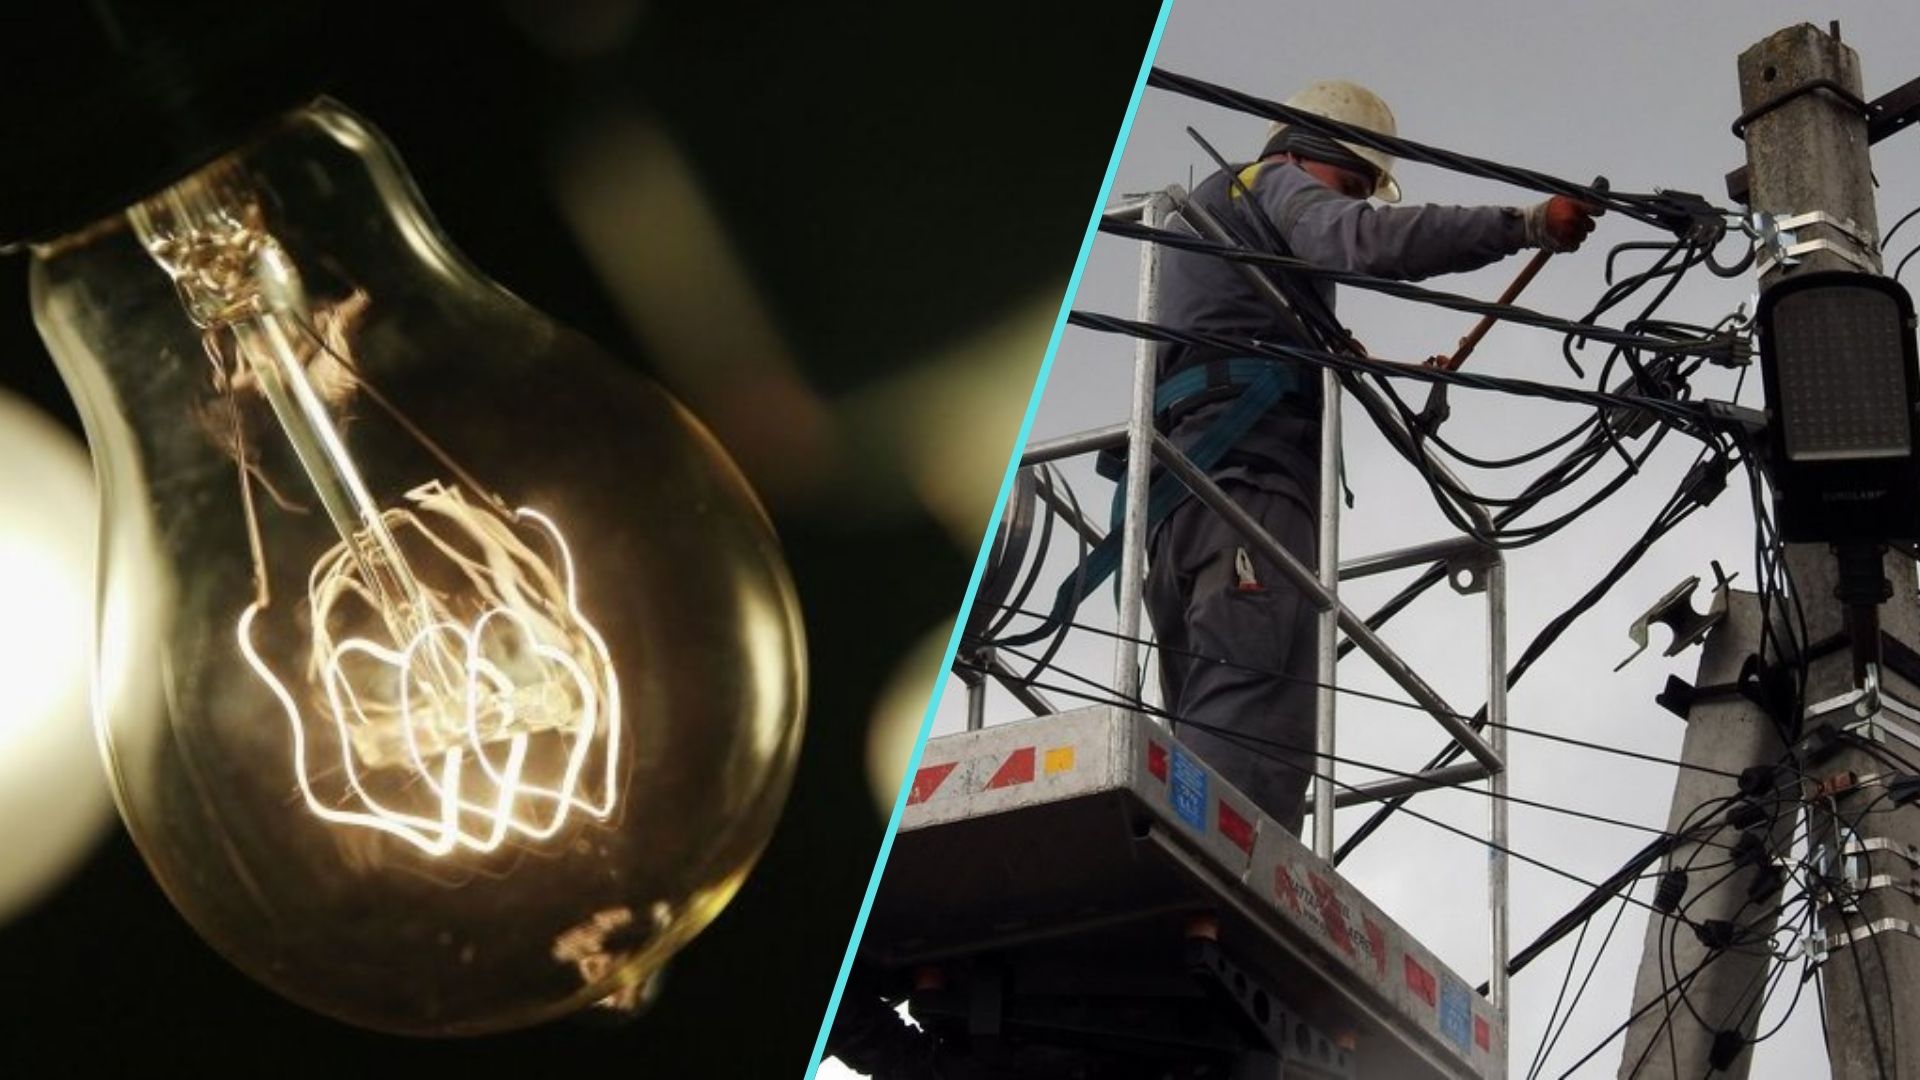 ПАТ «Закарпаттяобленерго» повідомляє про планові відключення електроенергії на Закарпатті, пов’язані з проведенням ремонтних робіт на електроустановках і електричних мережах.